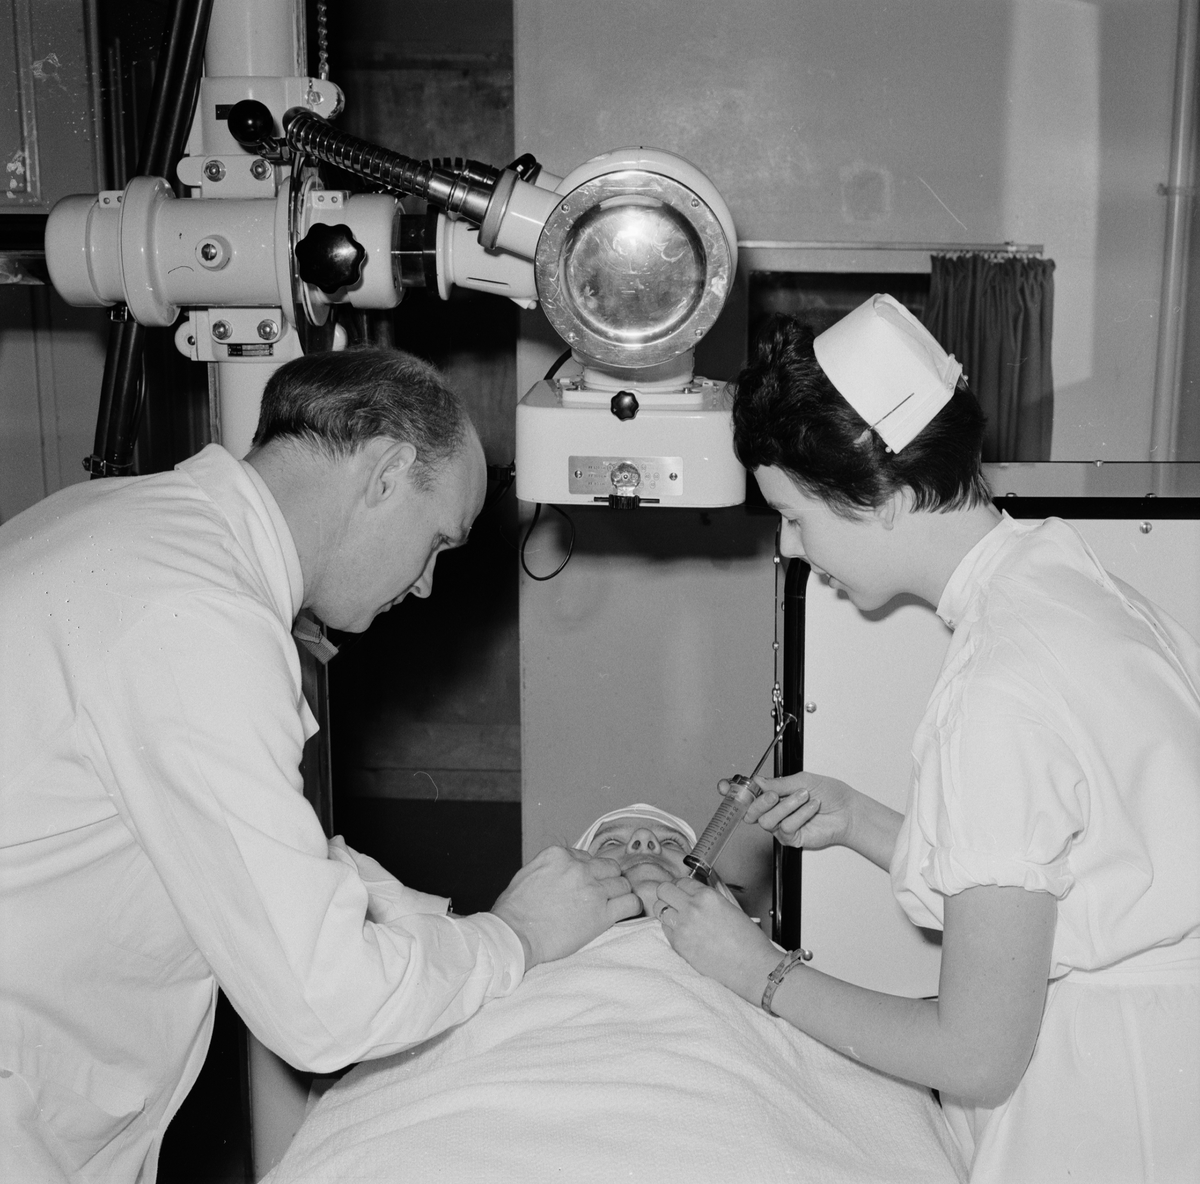 Läkaren Olof Olofsson och sjuksköterskan Karin Anens förbereder en röntgenundersökning av en hjärnpatient, Akademiska sjukhuset